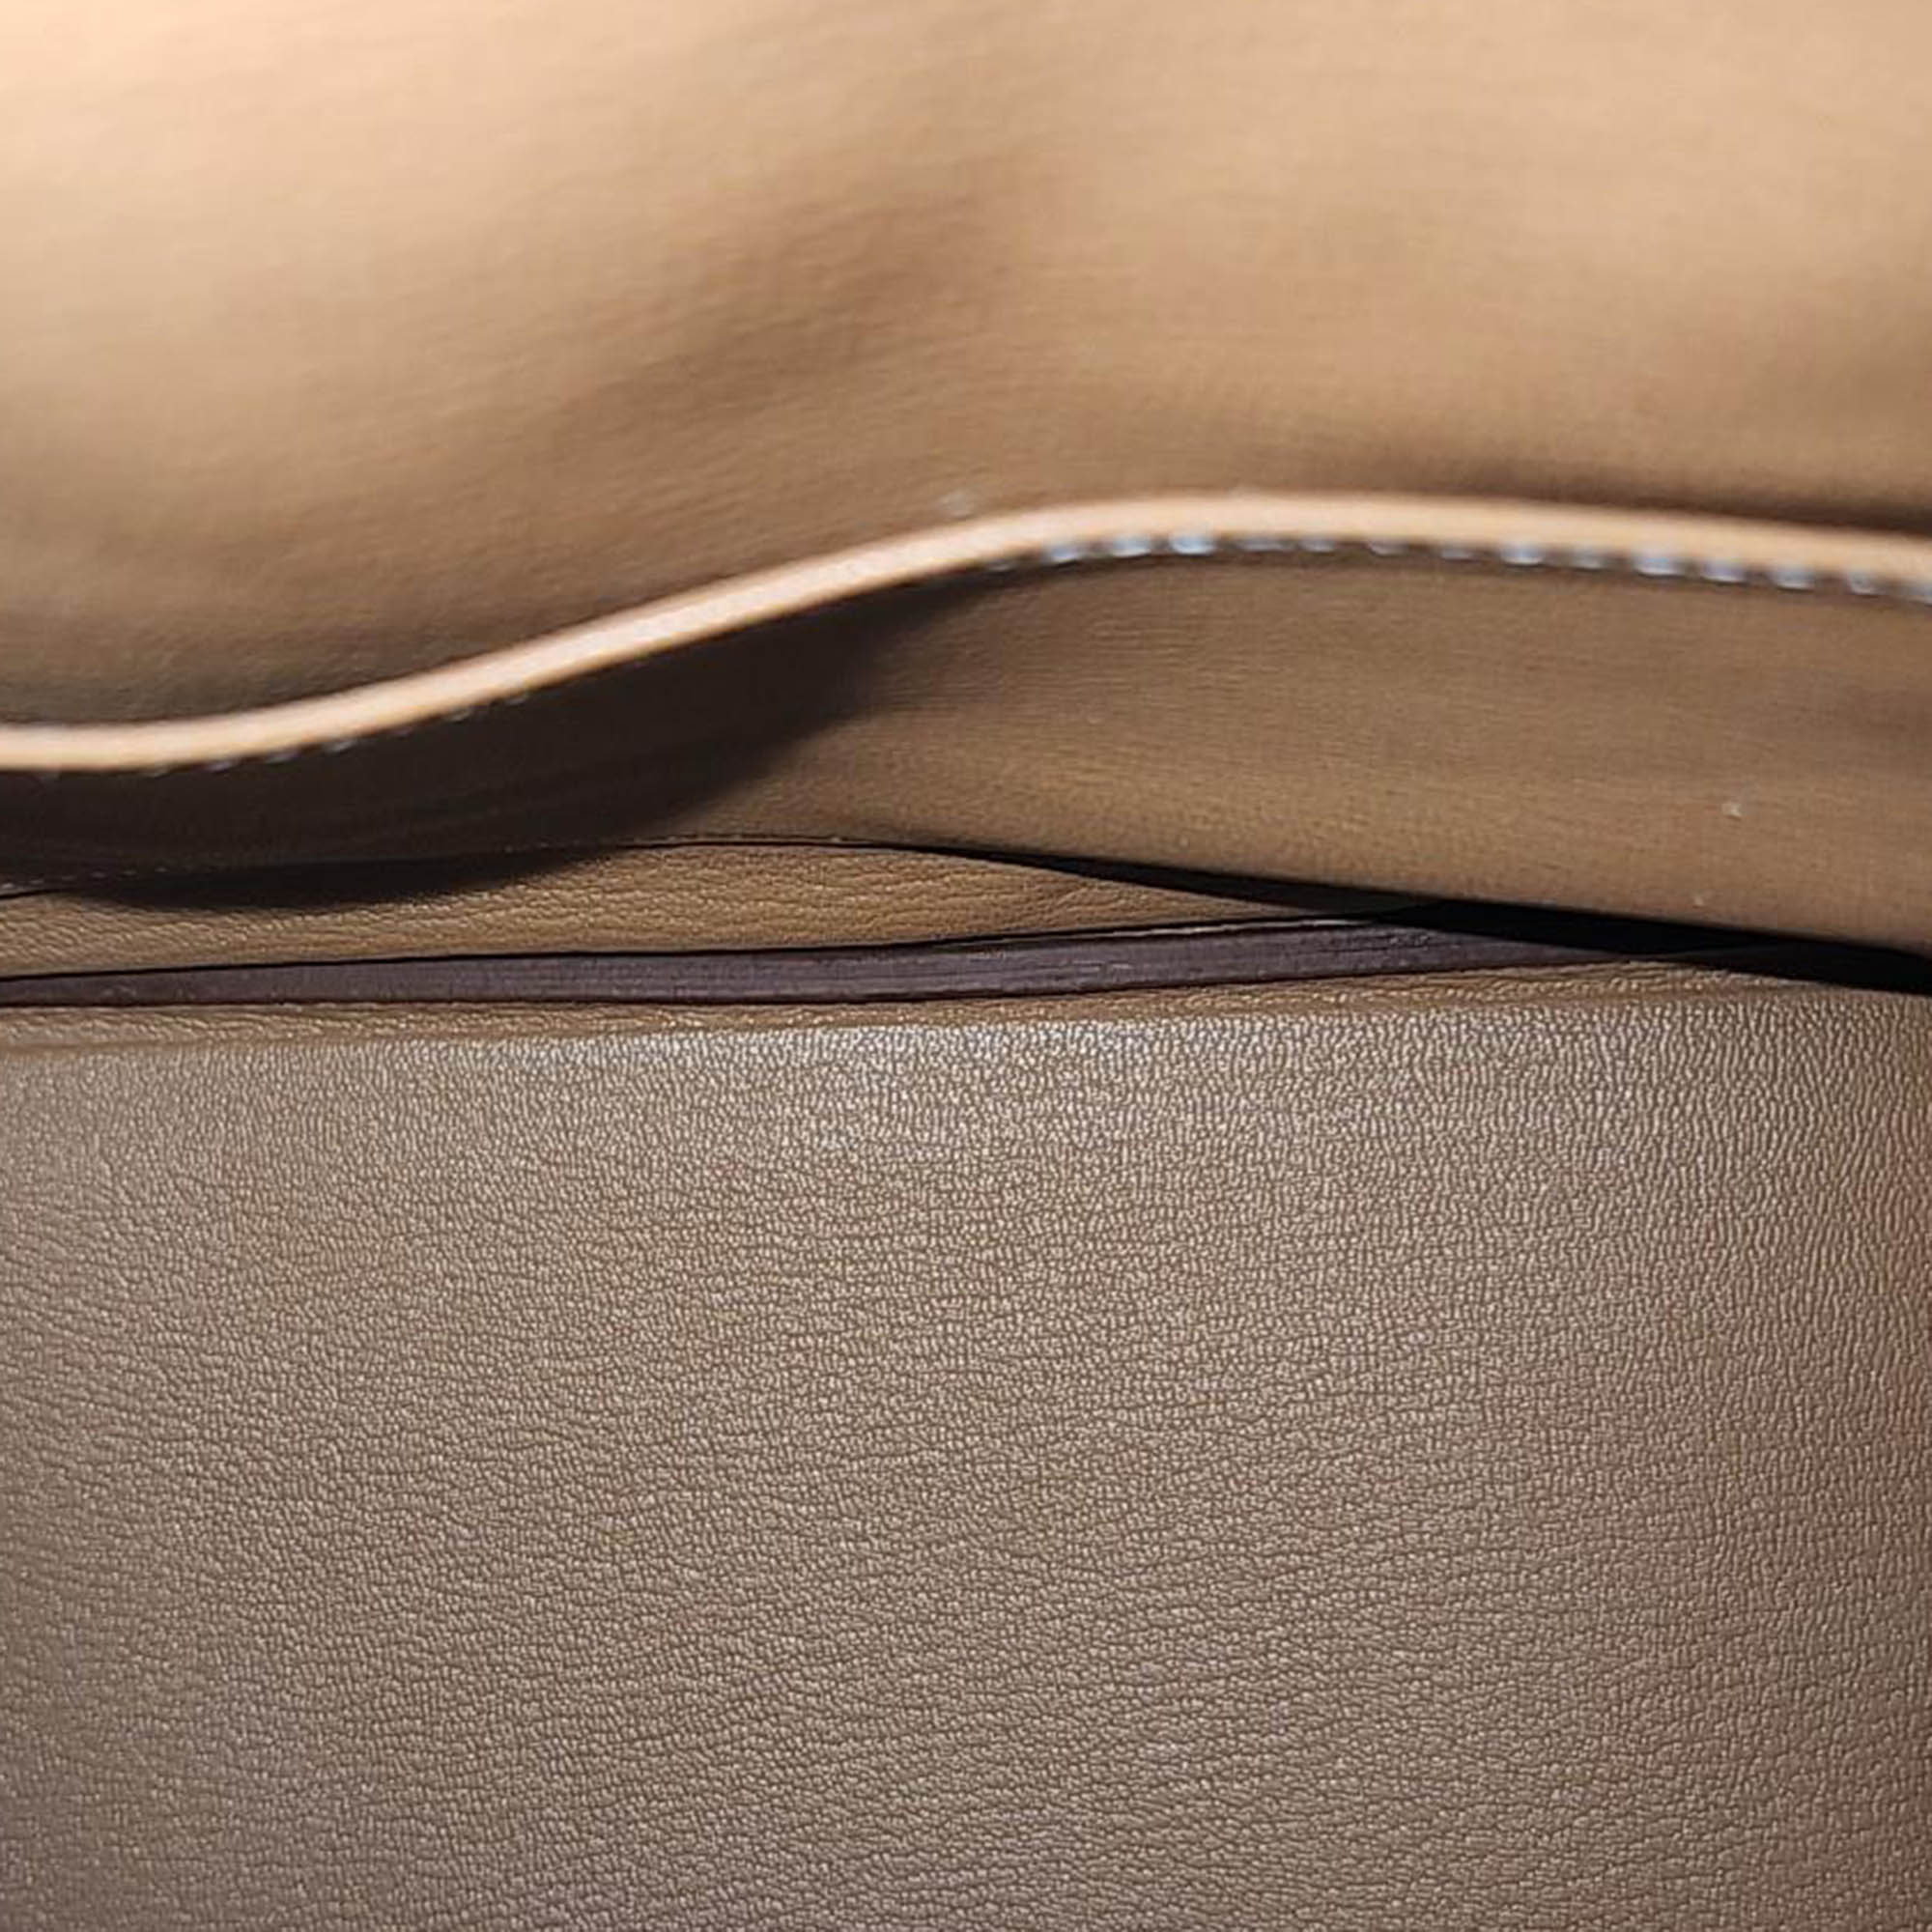 Hermes Birkin Brown Leather 30 (U) Bag